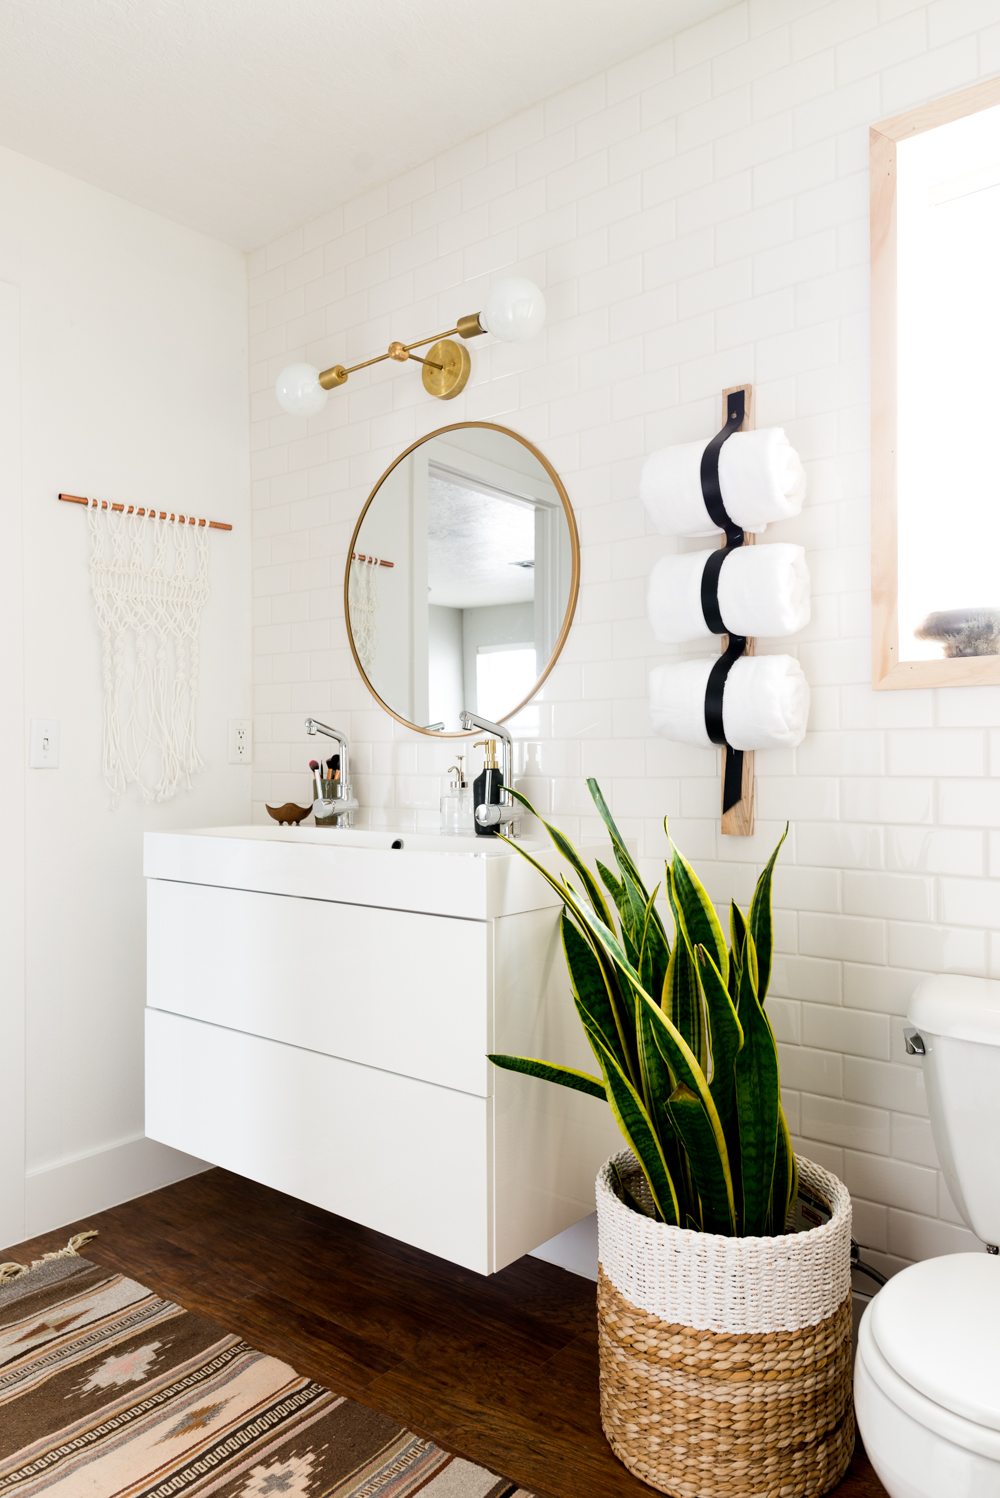 Một chậu cây lưỡi hổ trong nhà vệ sinh là giải pháp tuyệt vời để không gian ở đây được thanh sạch hơn.